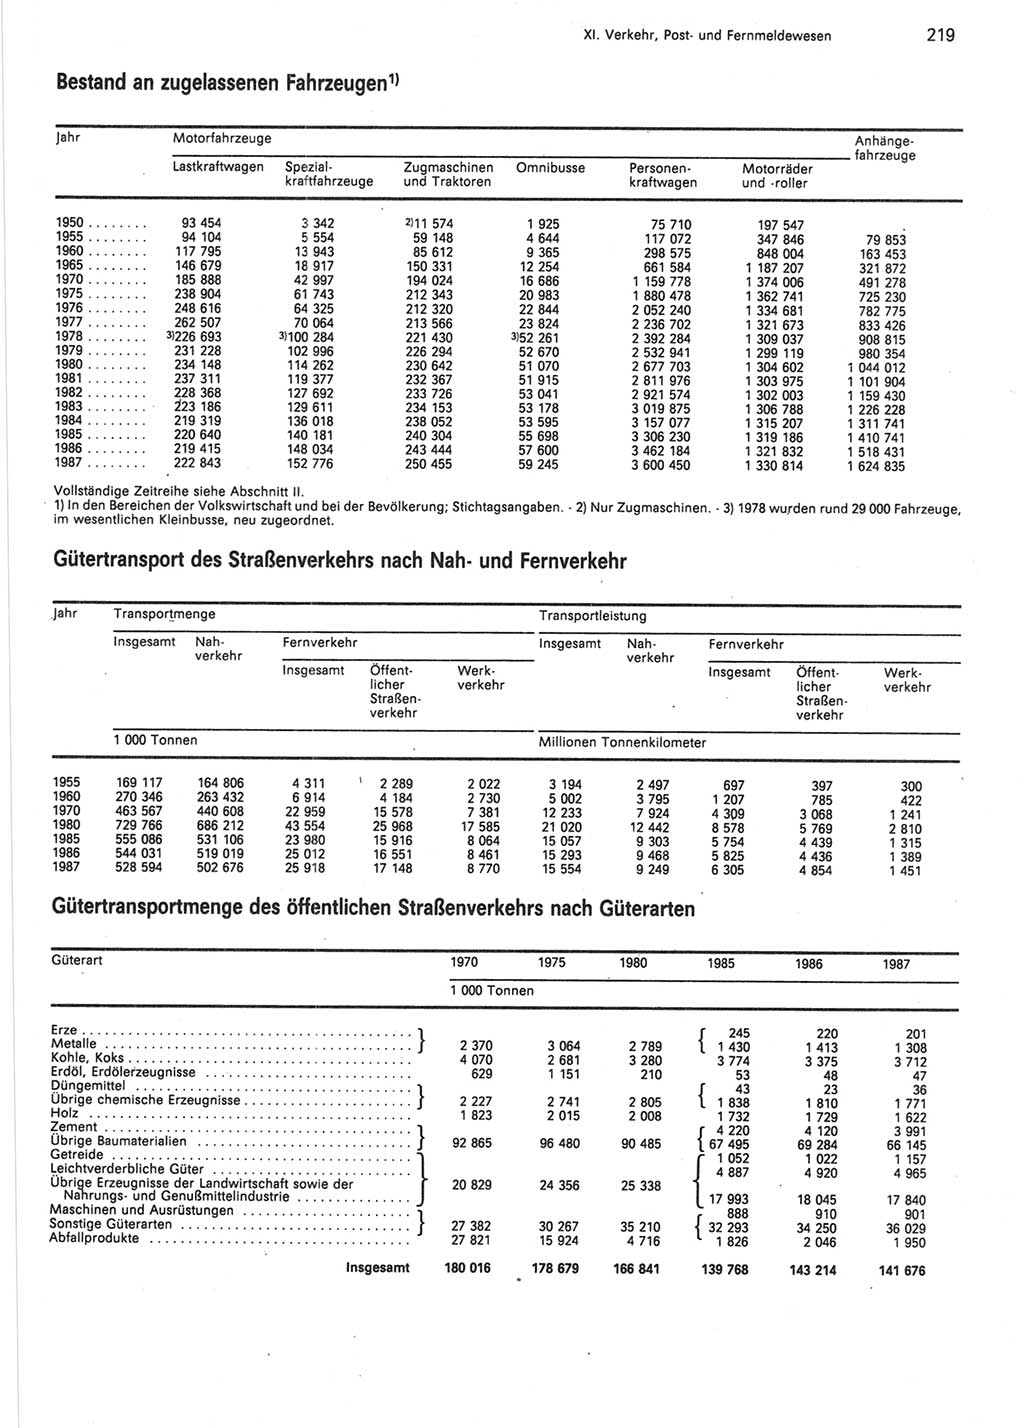 Statistisches Jahrbuch der Deutschen Demokratischen Republik (DDR) 1988, Seite 219 (Stat. Jb. DDR 1988, S. 219)